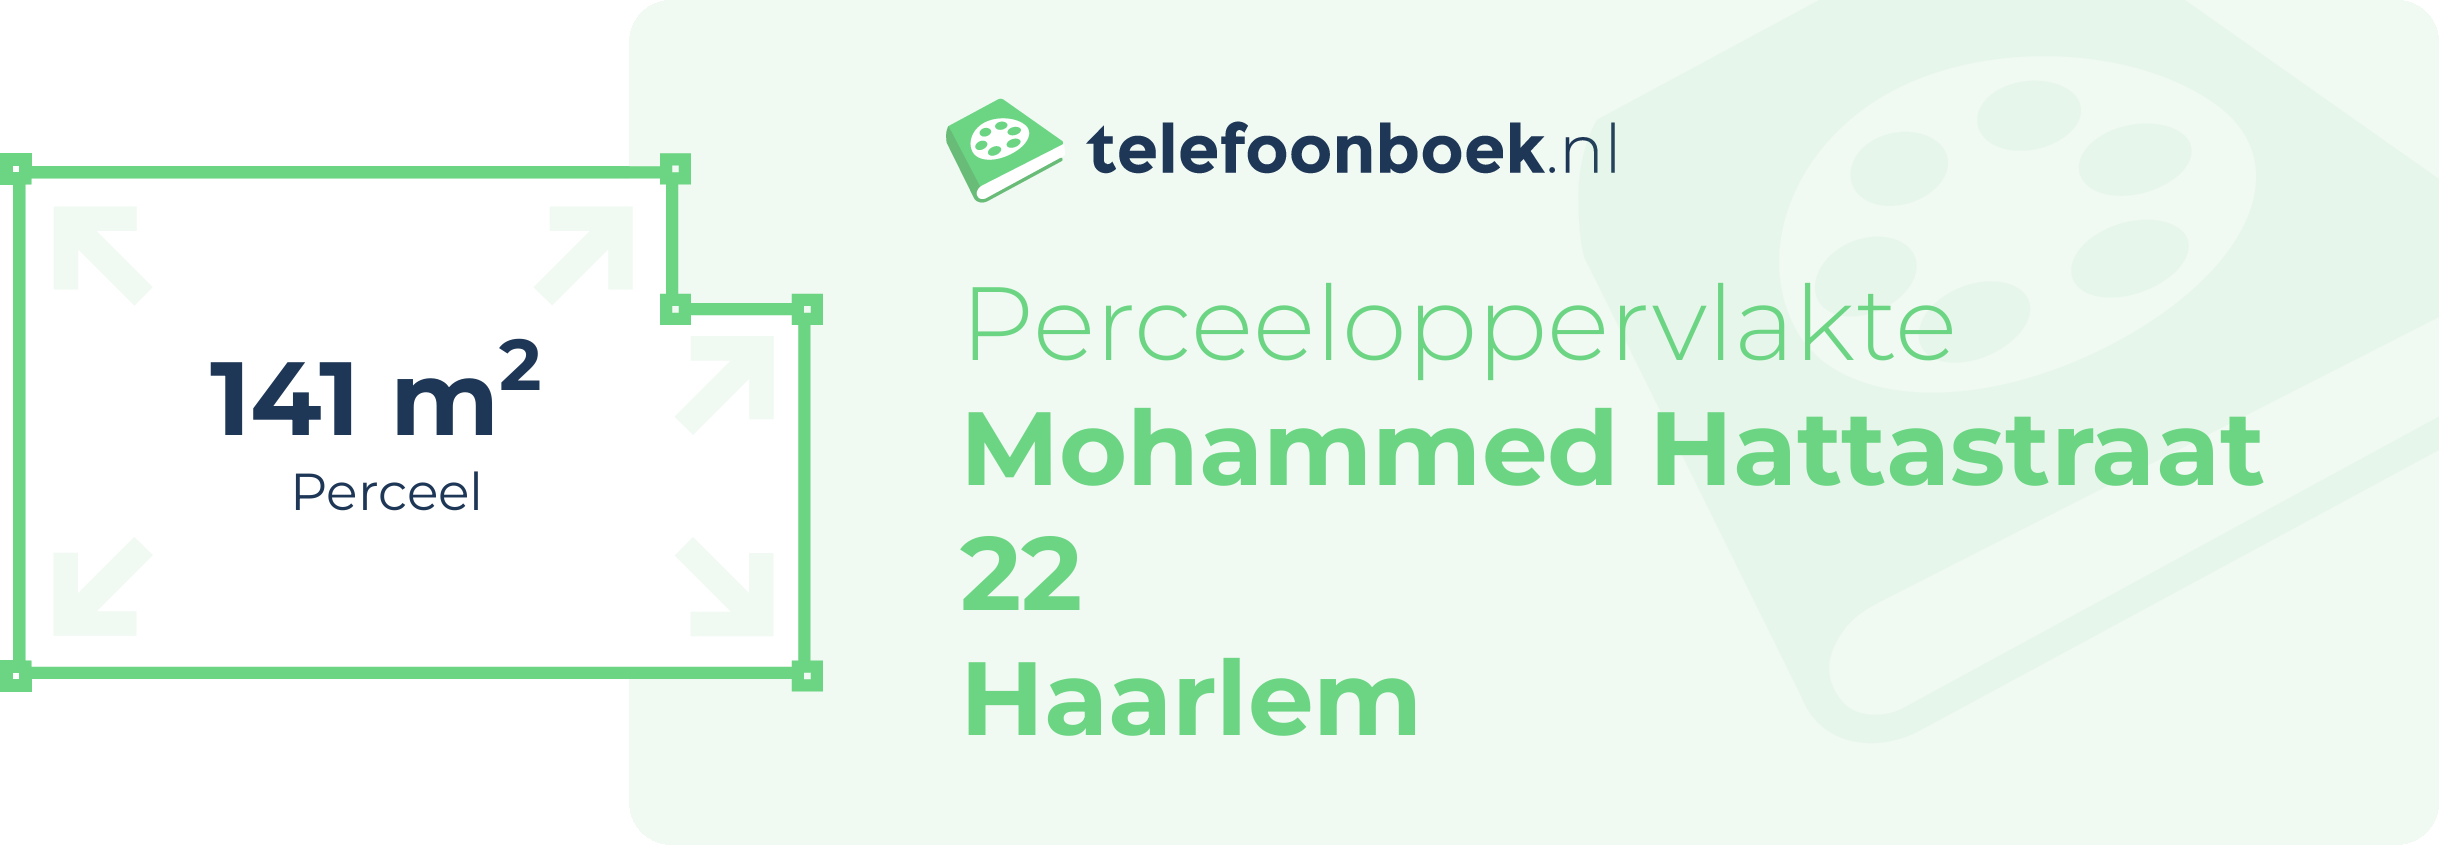 Perceeloppervlakte Mohammed Hattastraat 22 Haarlem